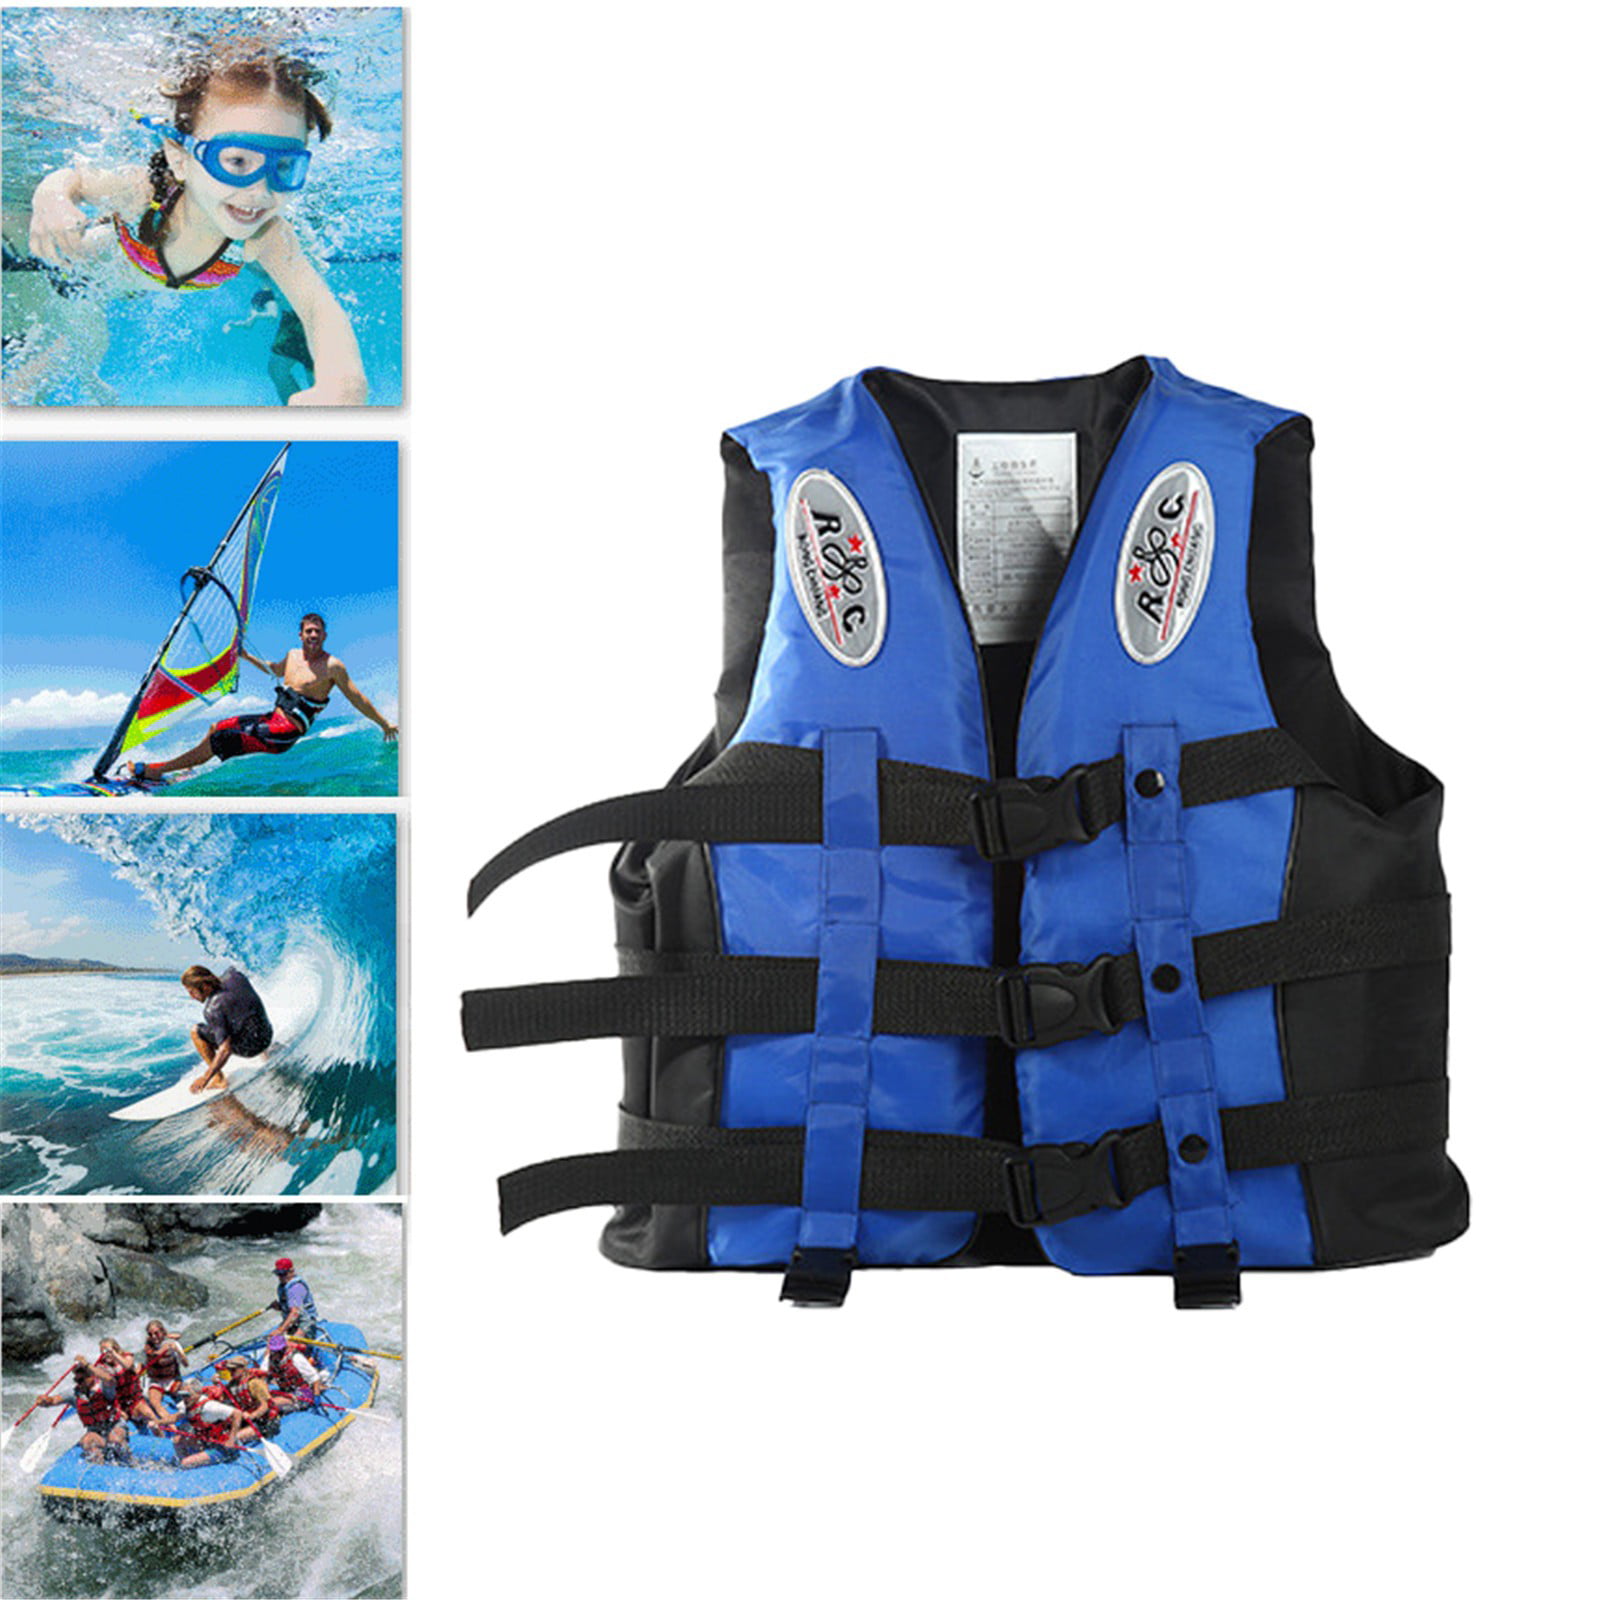 Adult Buoyancy Aid Sailing Kayak Boating Good Quality Life Jacket Jackets Vest 